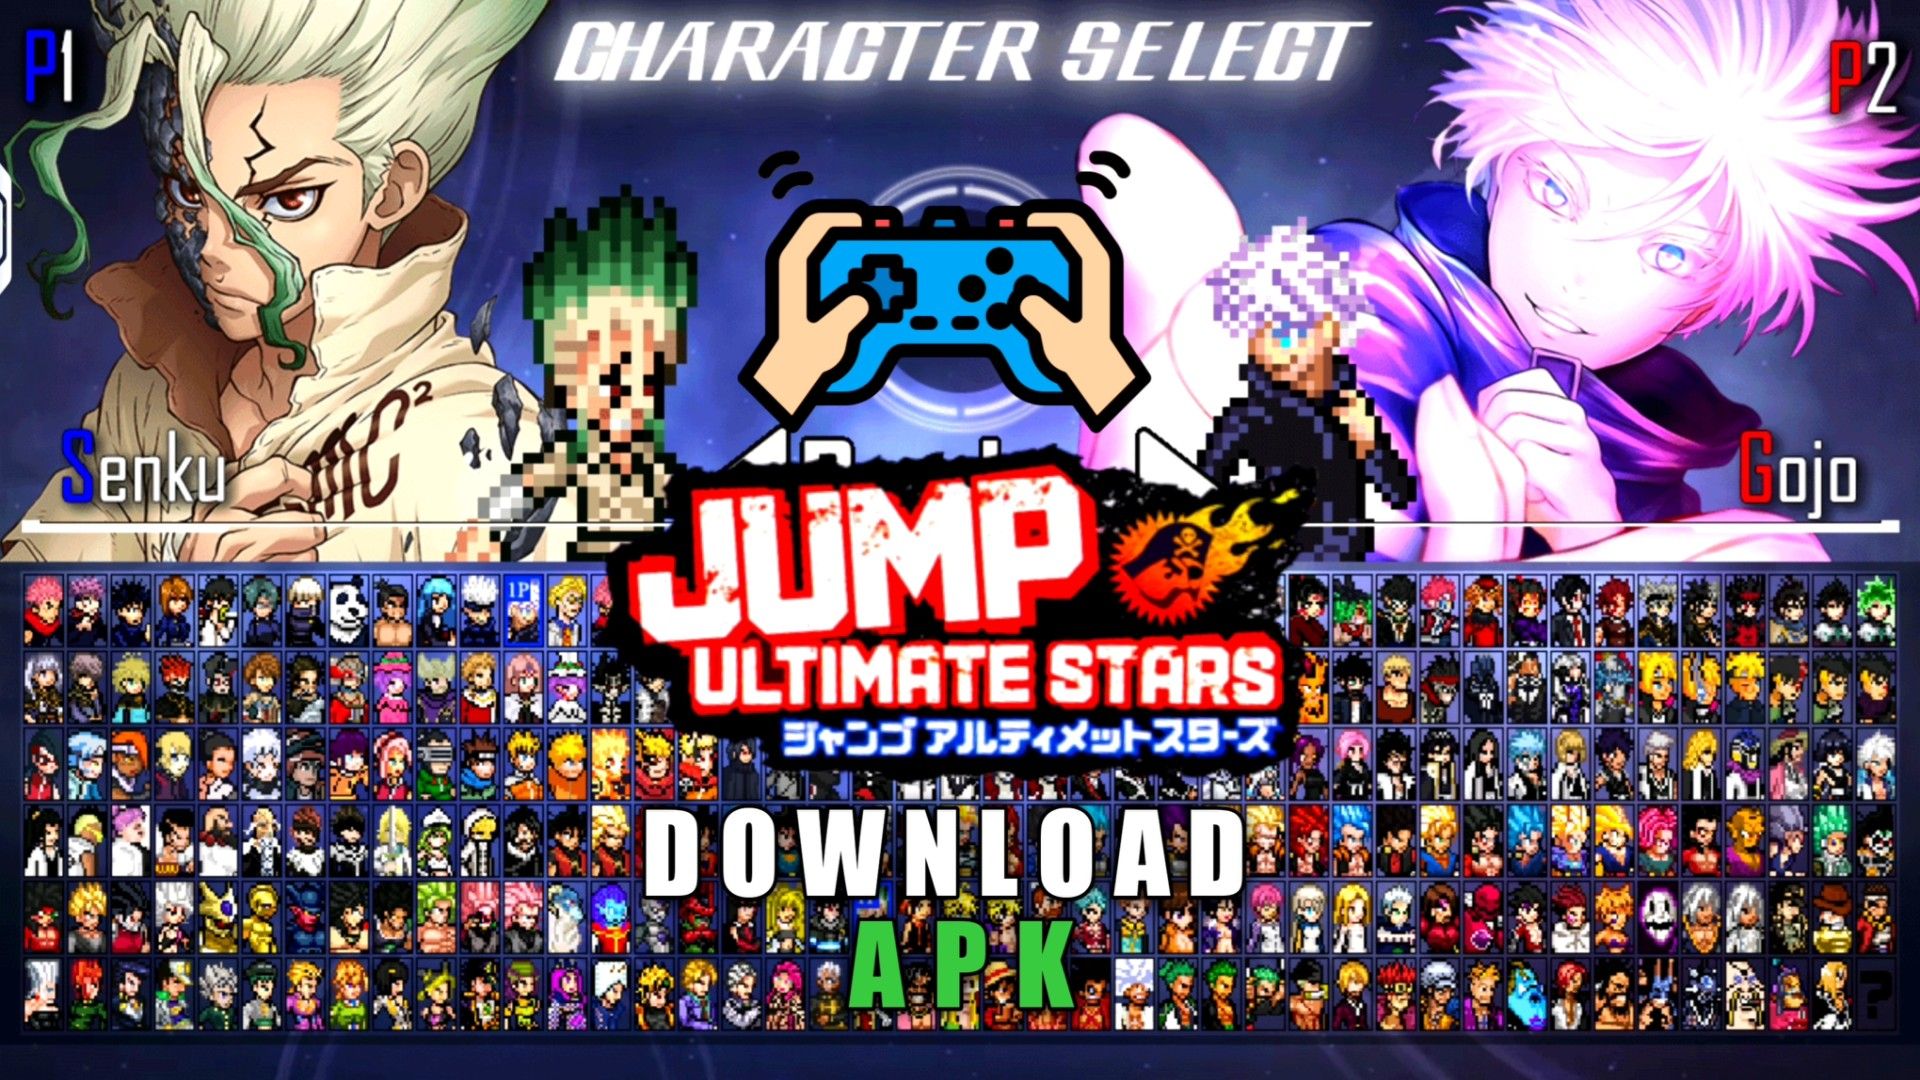 Download Jump Force Mugen Apk v8.19 (Latest)